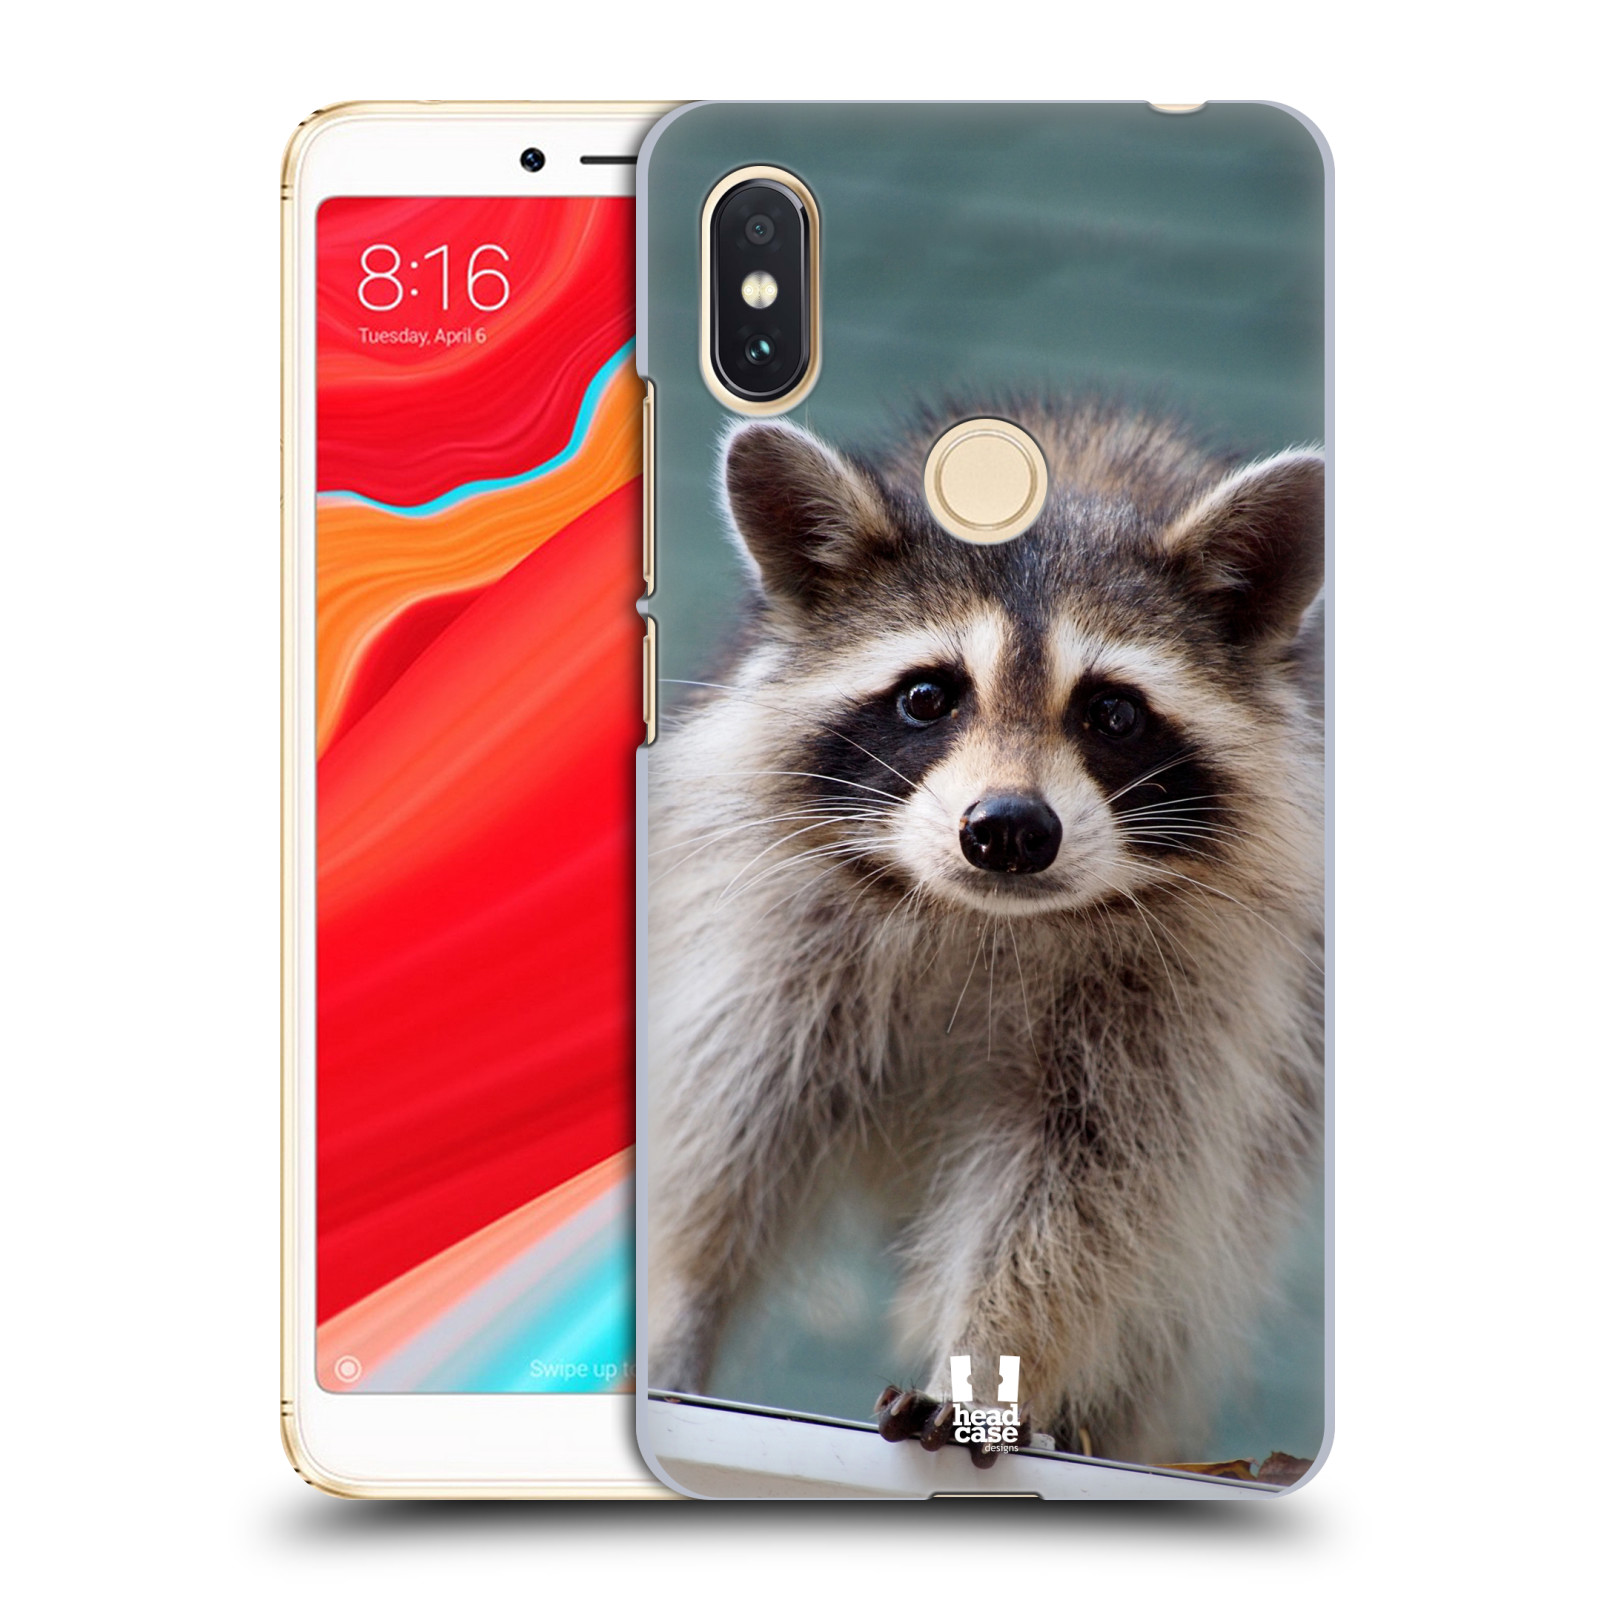 HEAD CASE plastový obal na mobil Xiaomi Redmi S2 vzor slavná zvířata foto malý mýval